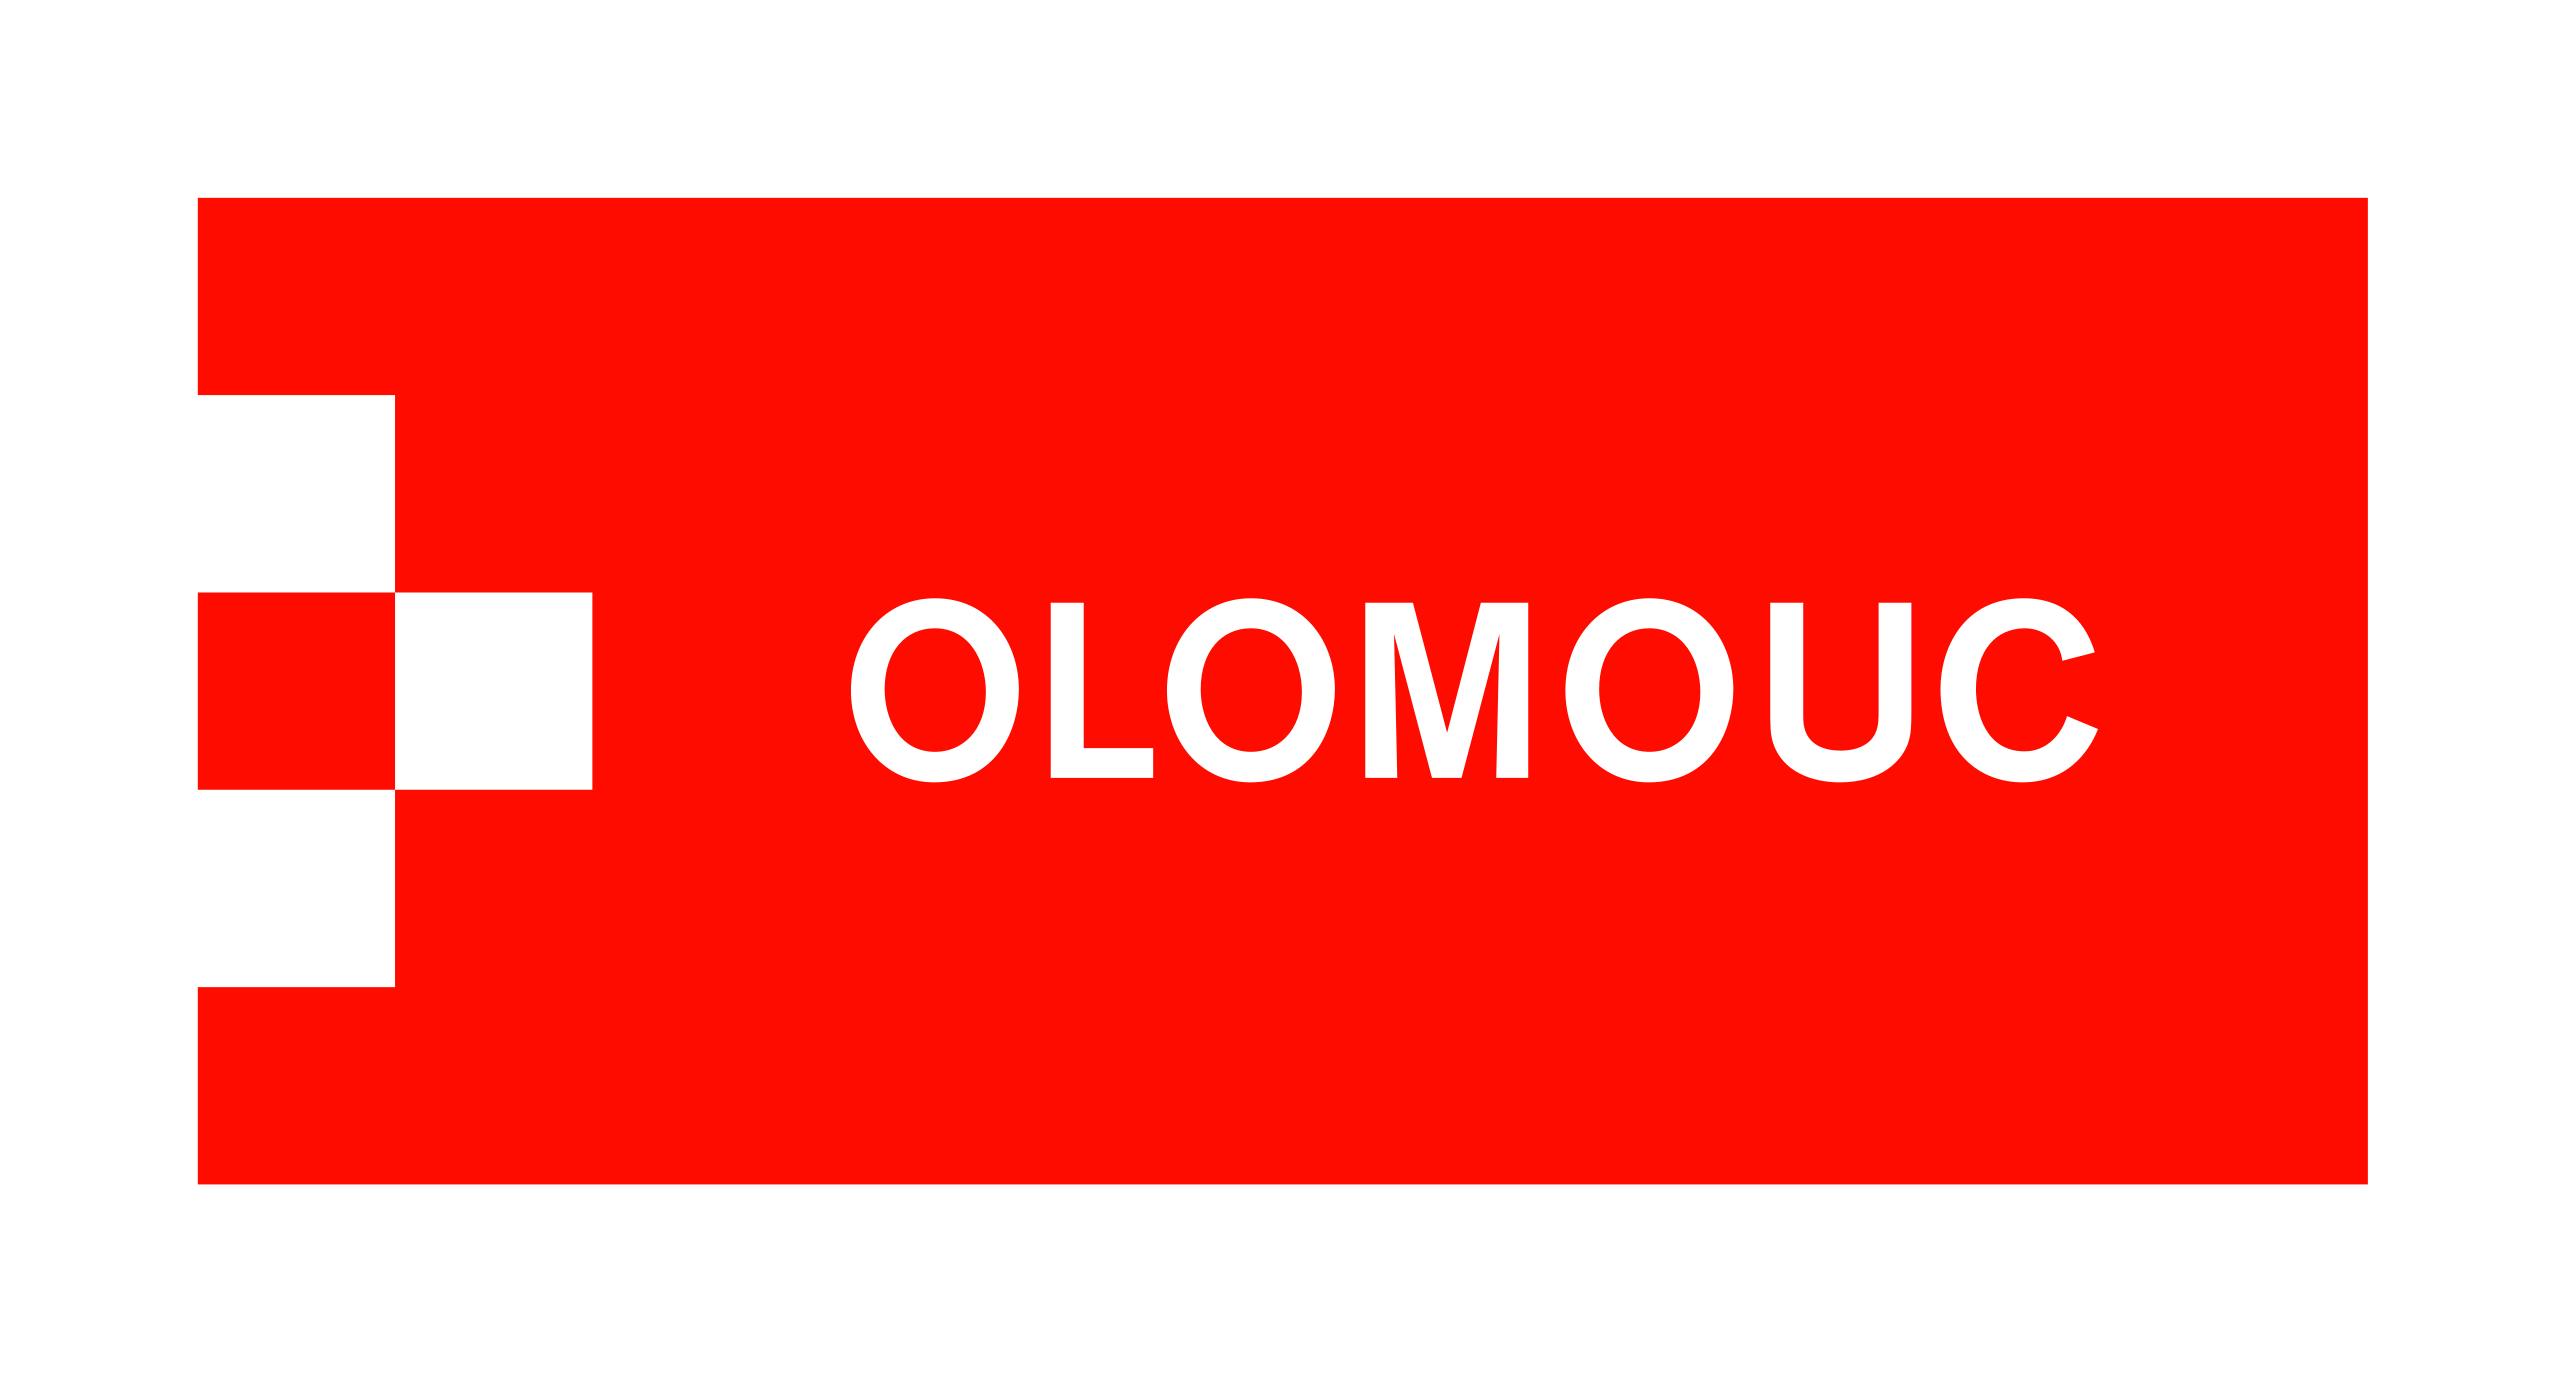 images/sponsors/logo_olomouc.png